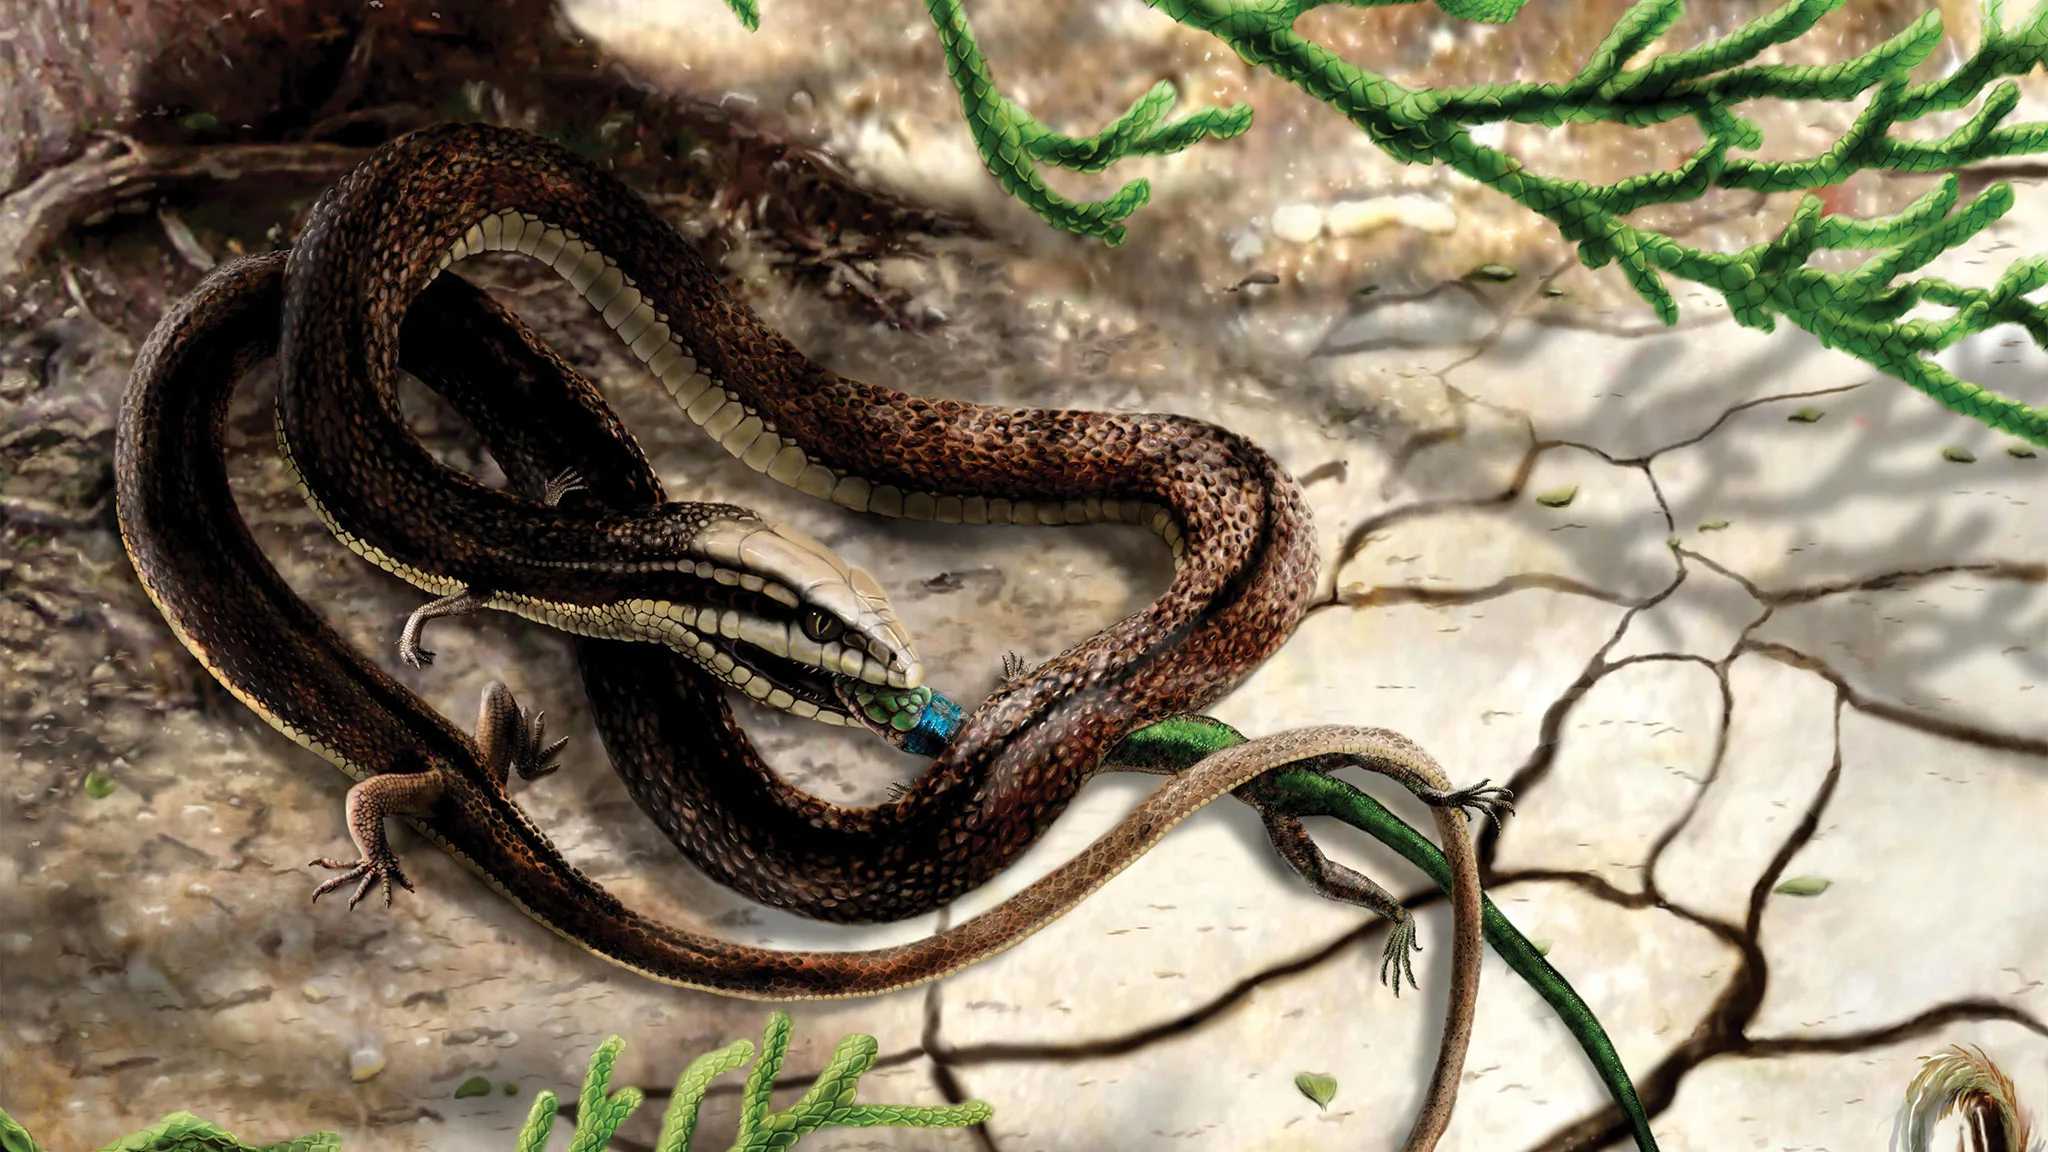 Tetrapodophis amplectus, которую считали предком змеи, оказалось морской ящерицей